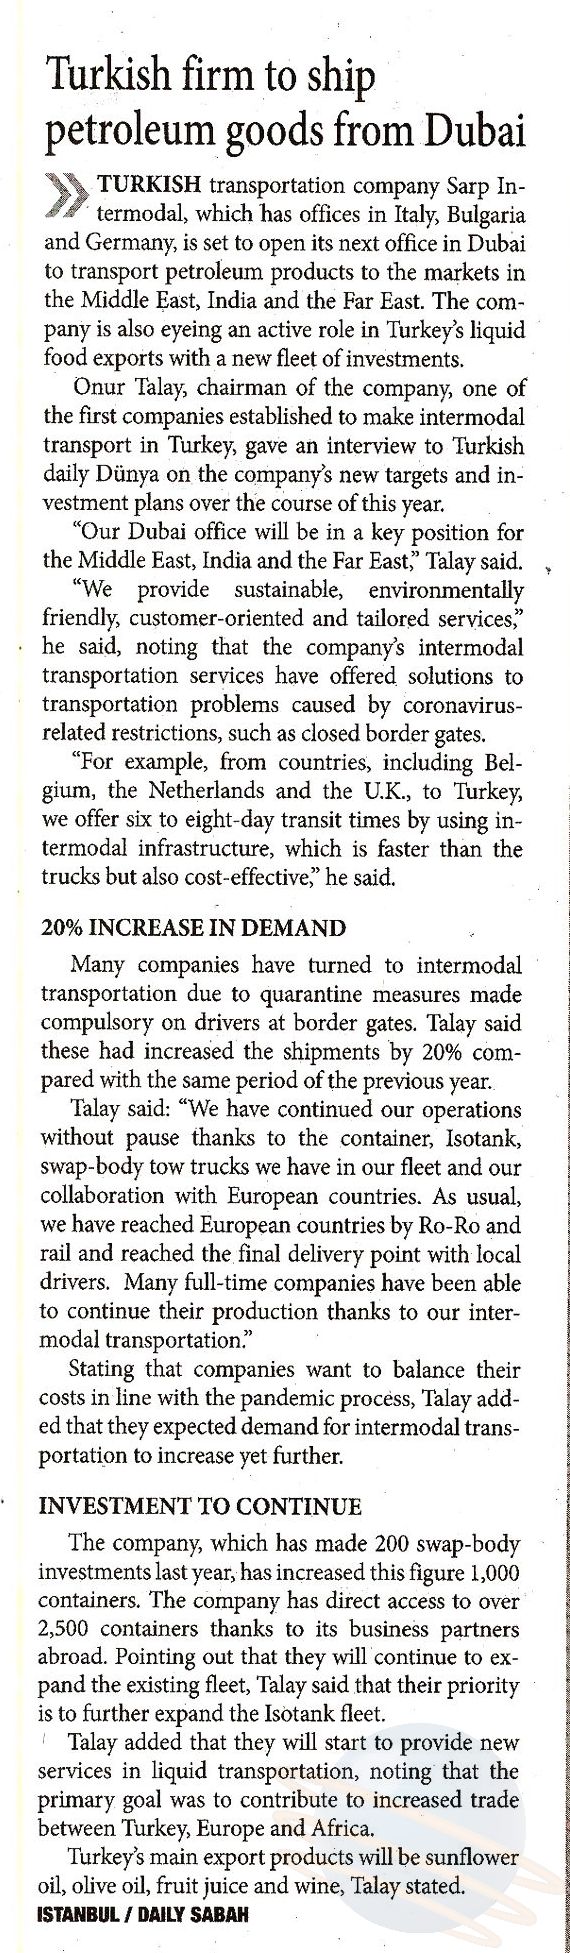 Turkish Firm, Sarp Intermodal, to Ship Petroleum Goods From Dubai // Daily Sabah